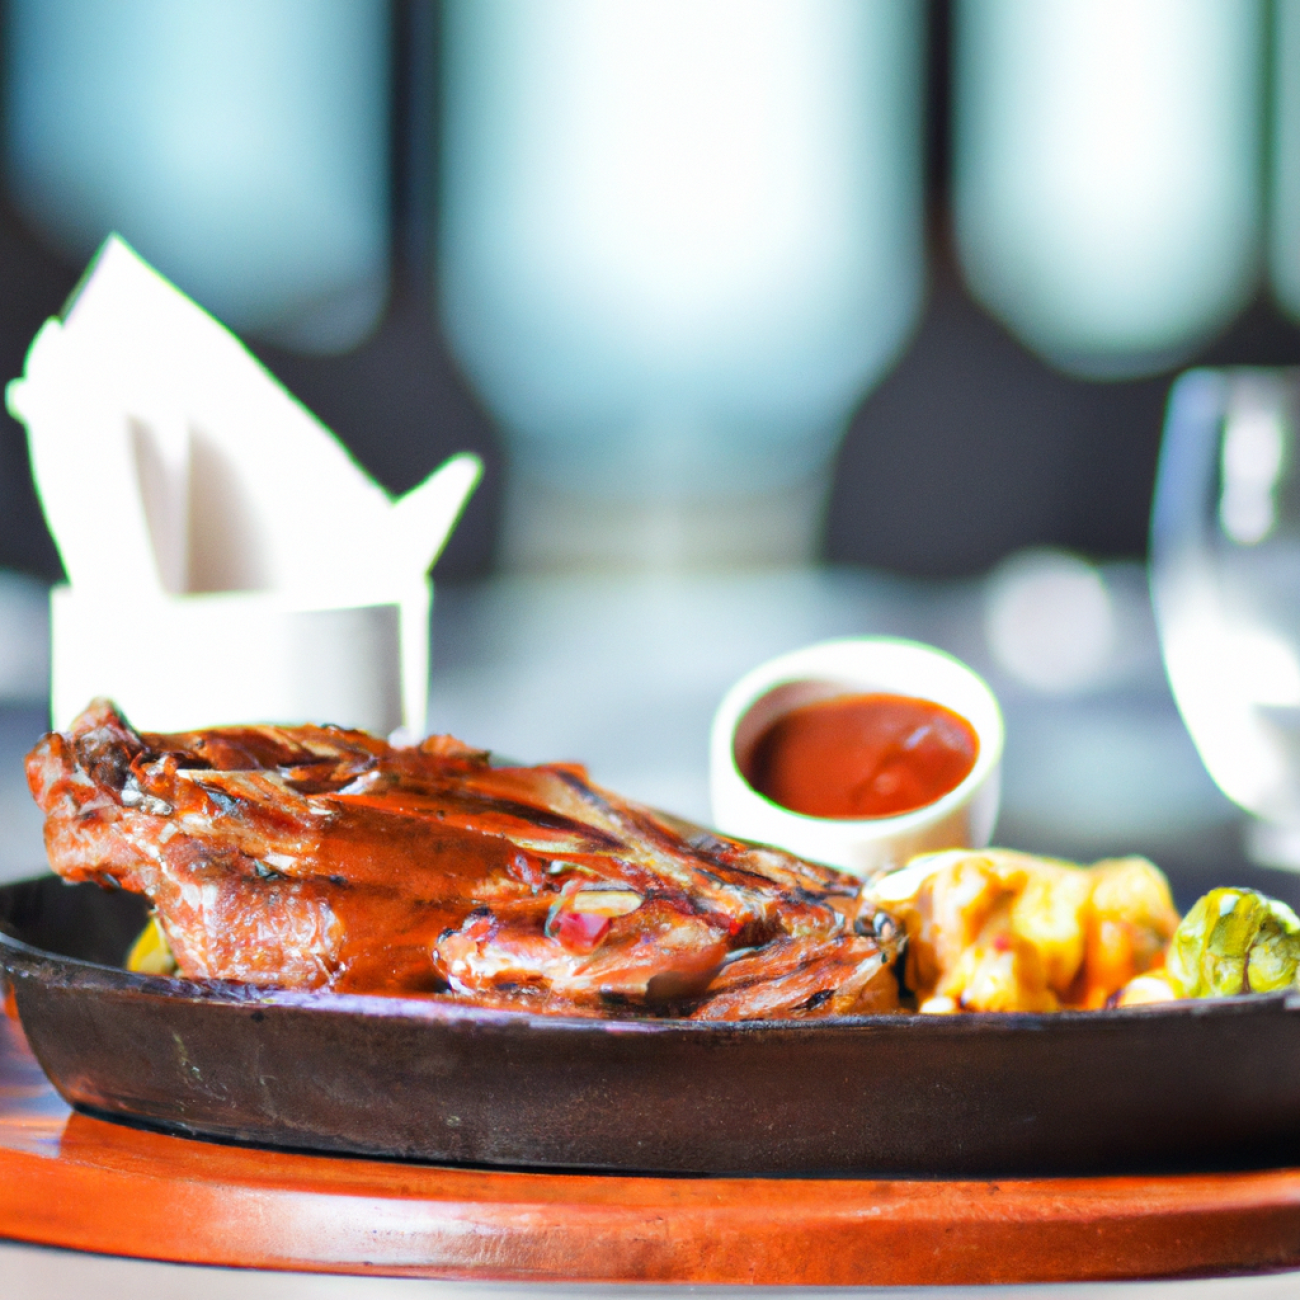 6. The Tavern: Skvělý steak s prvotřídními přílohami a zároveň živá atmosféra